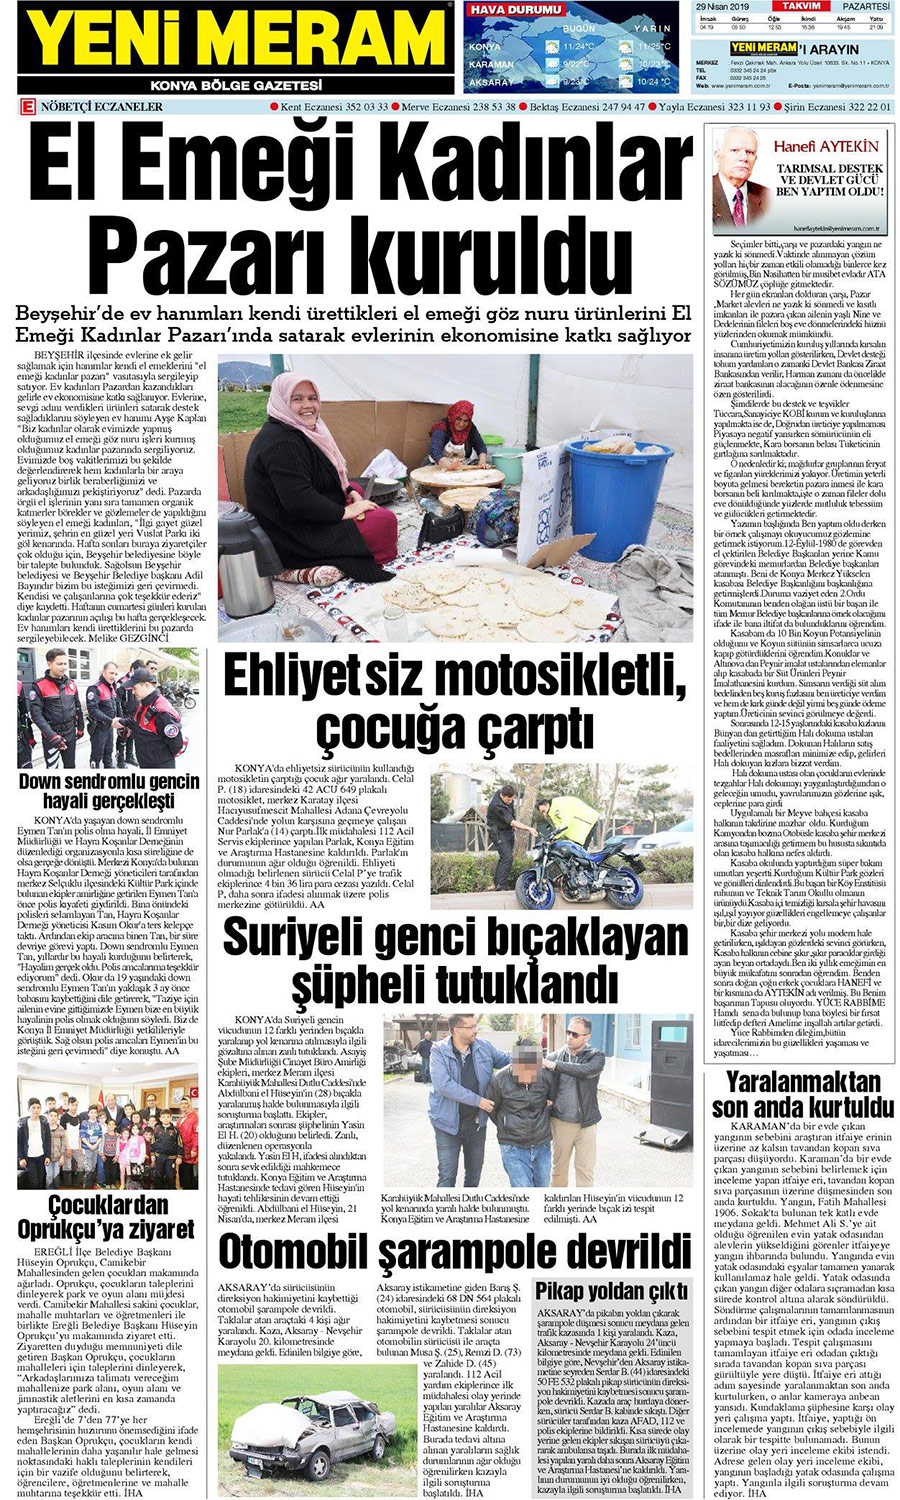 29 Nisan 2019 Yeni Meram Gazetesi